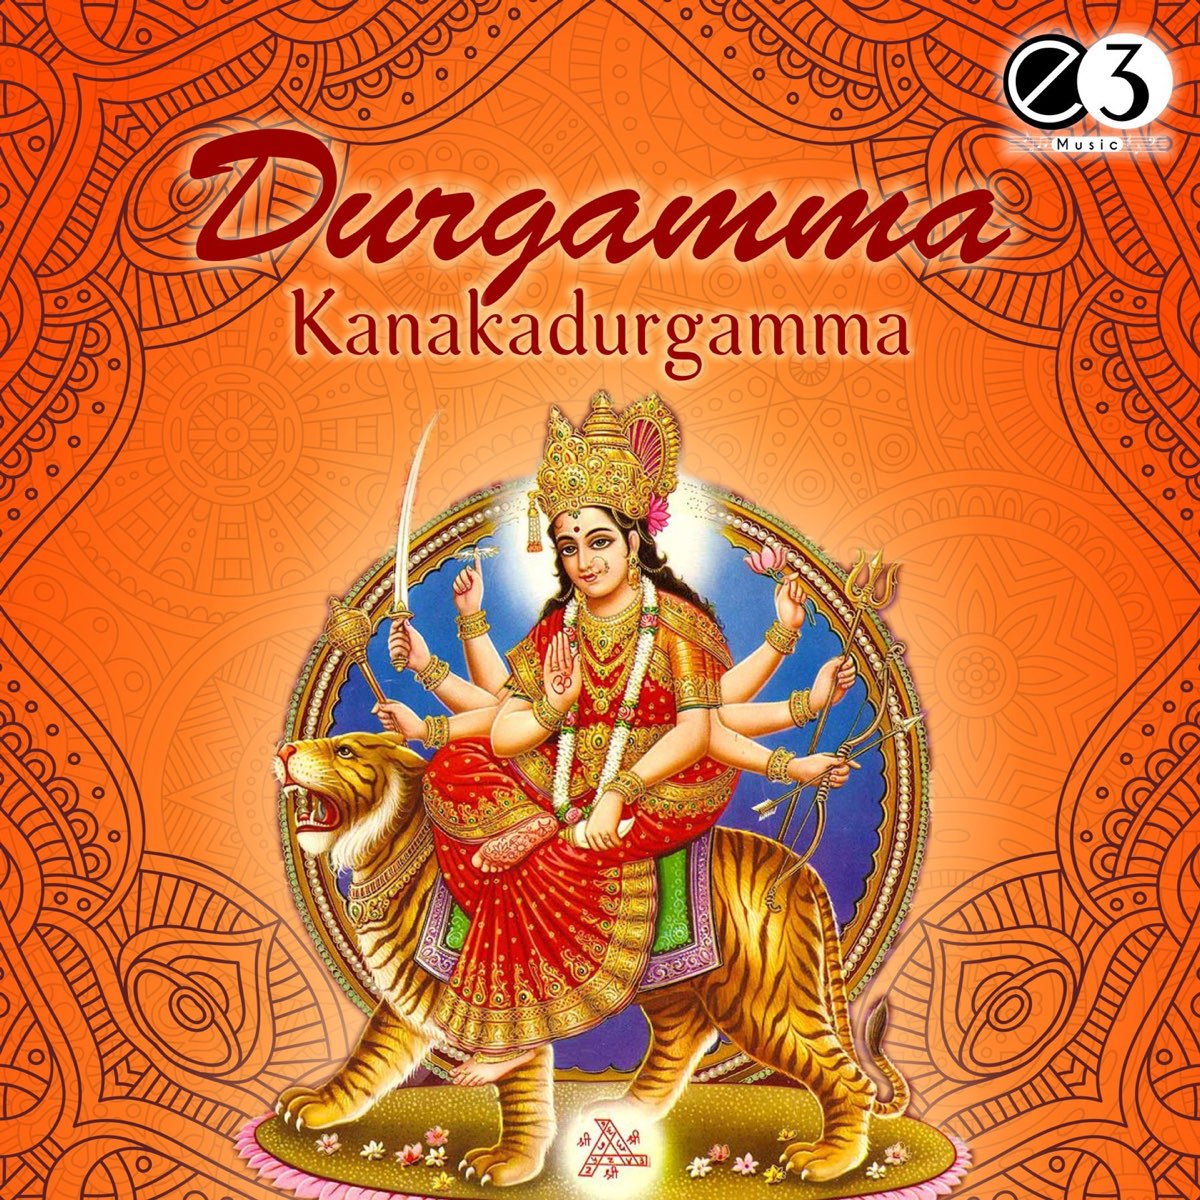 Durgamma Kanakadurgamma by P. Susheela on Apple Music